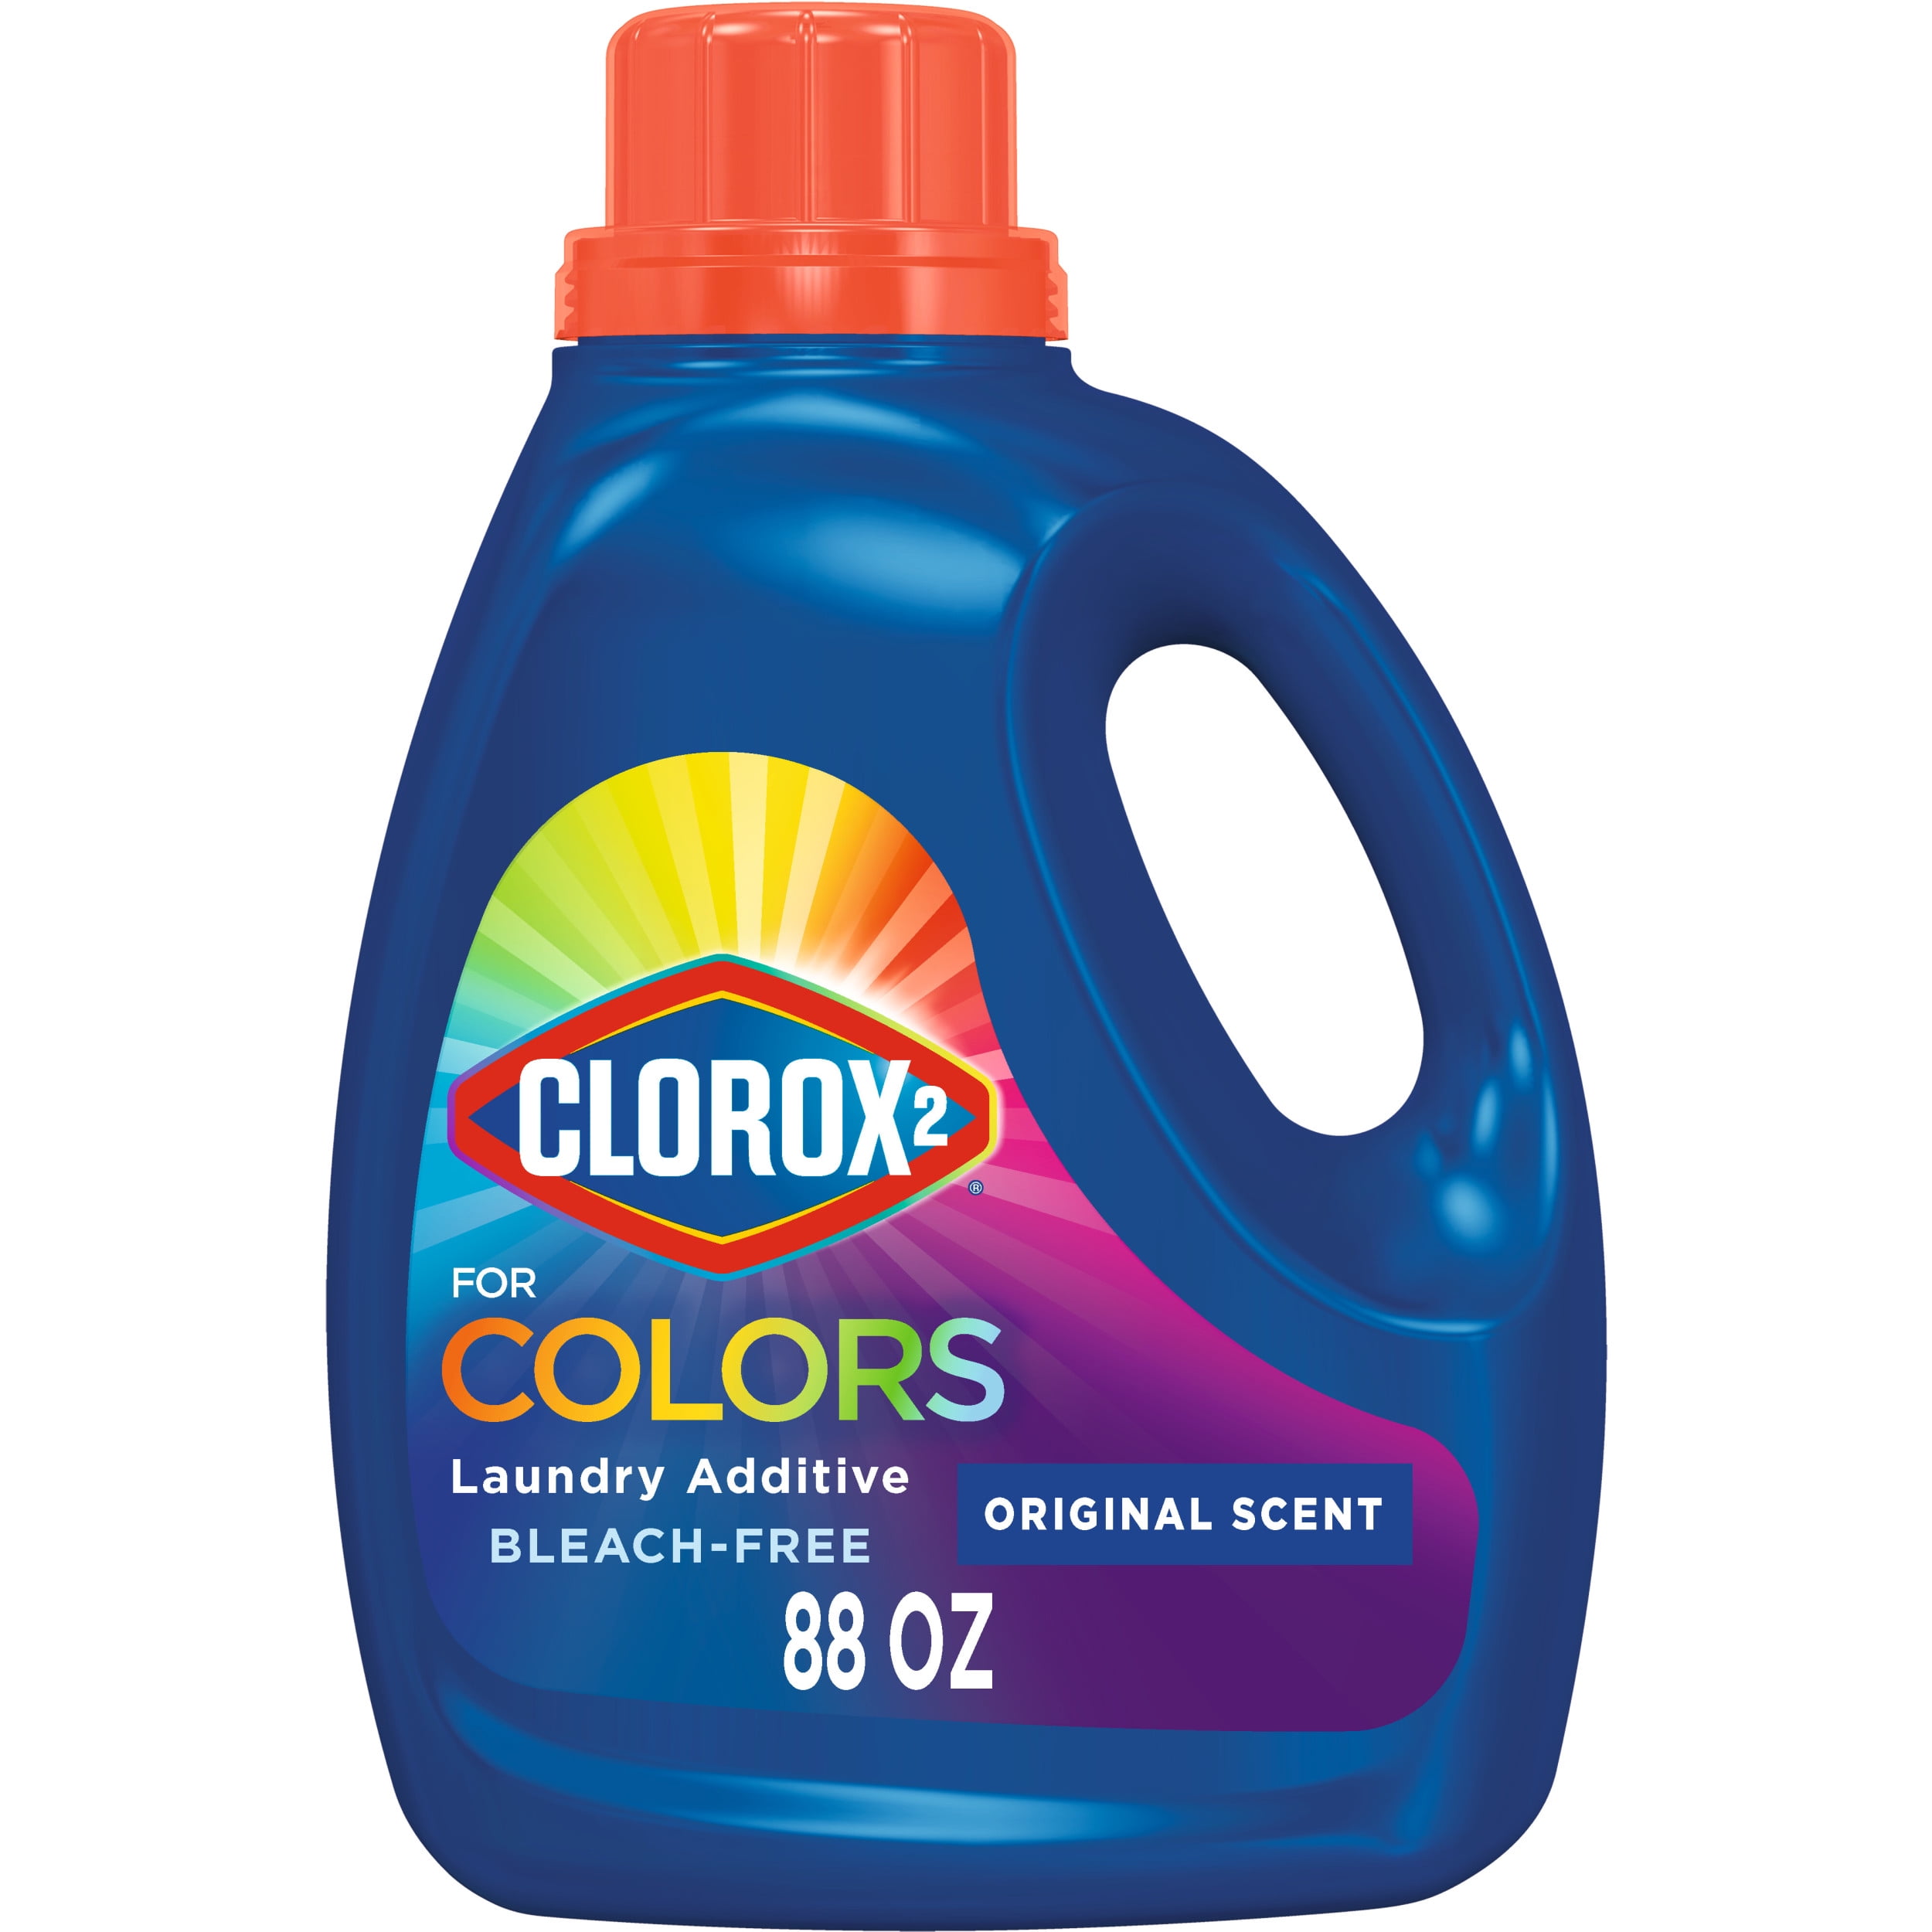 Clorox 2 Laundry Stain Remover Precision Pen for Colors, 1 Pen 